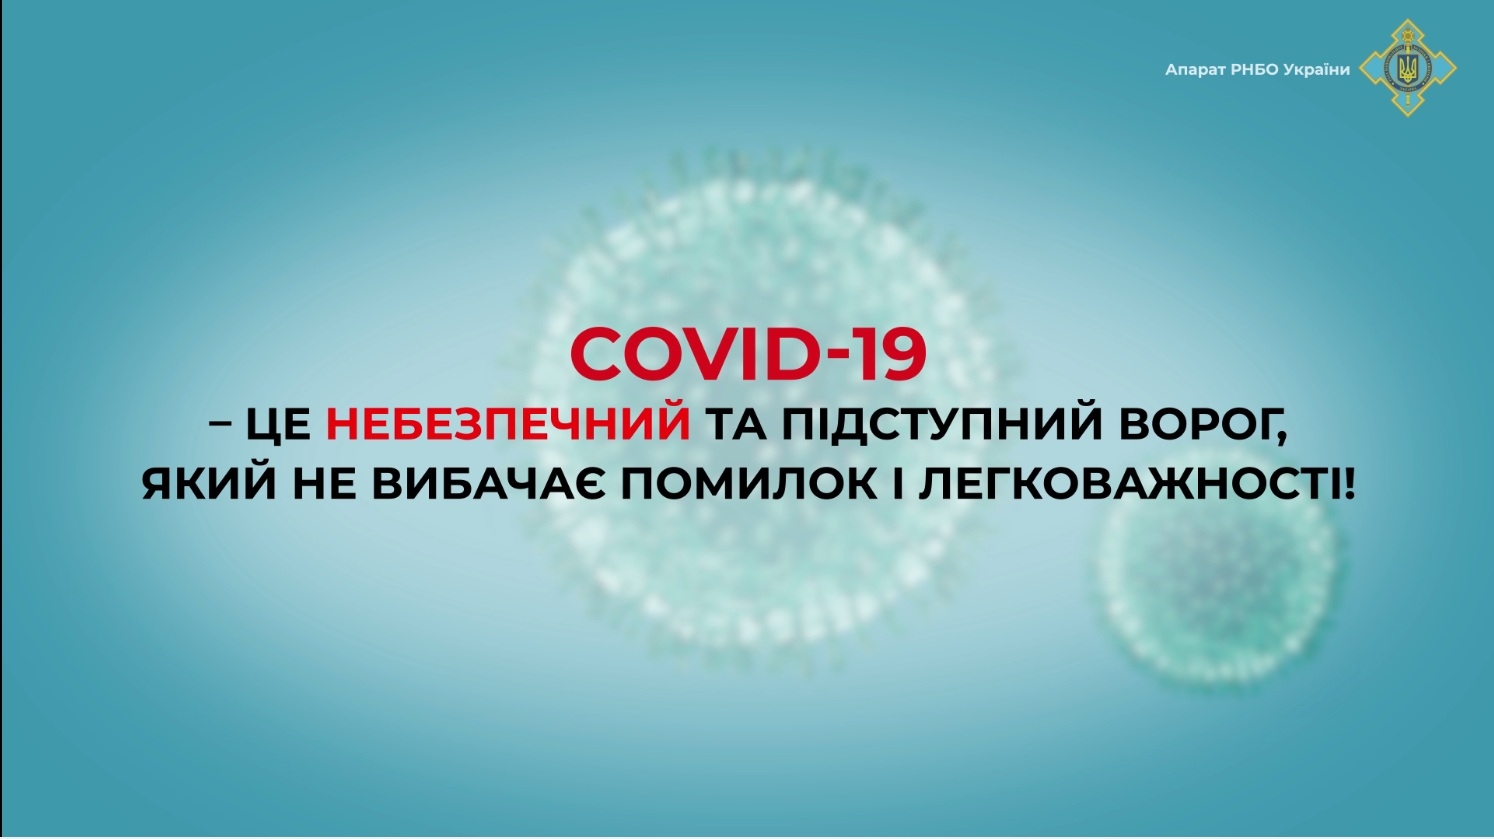 COVID-19: Правила, яких треба дотримуватися, щоб не захворіти на коронавірус  - Рада національної безпеки і оборони України